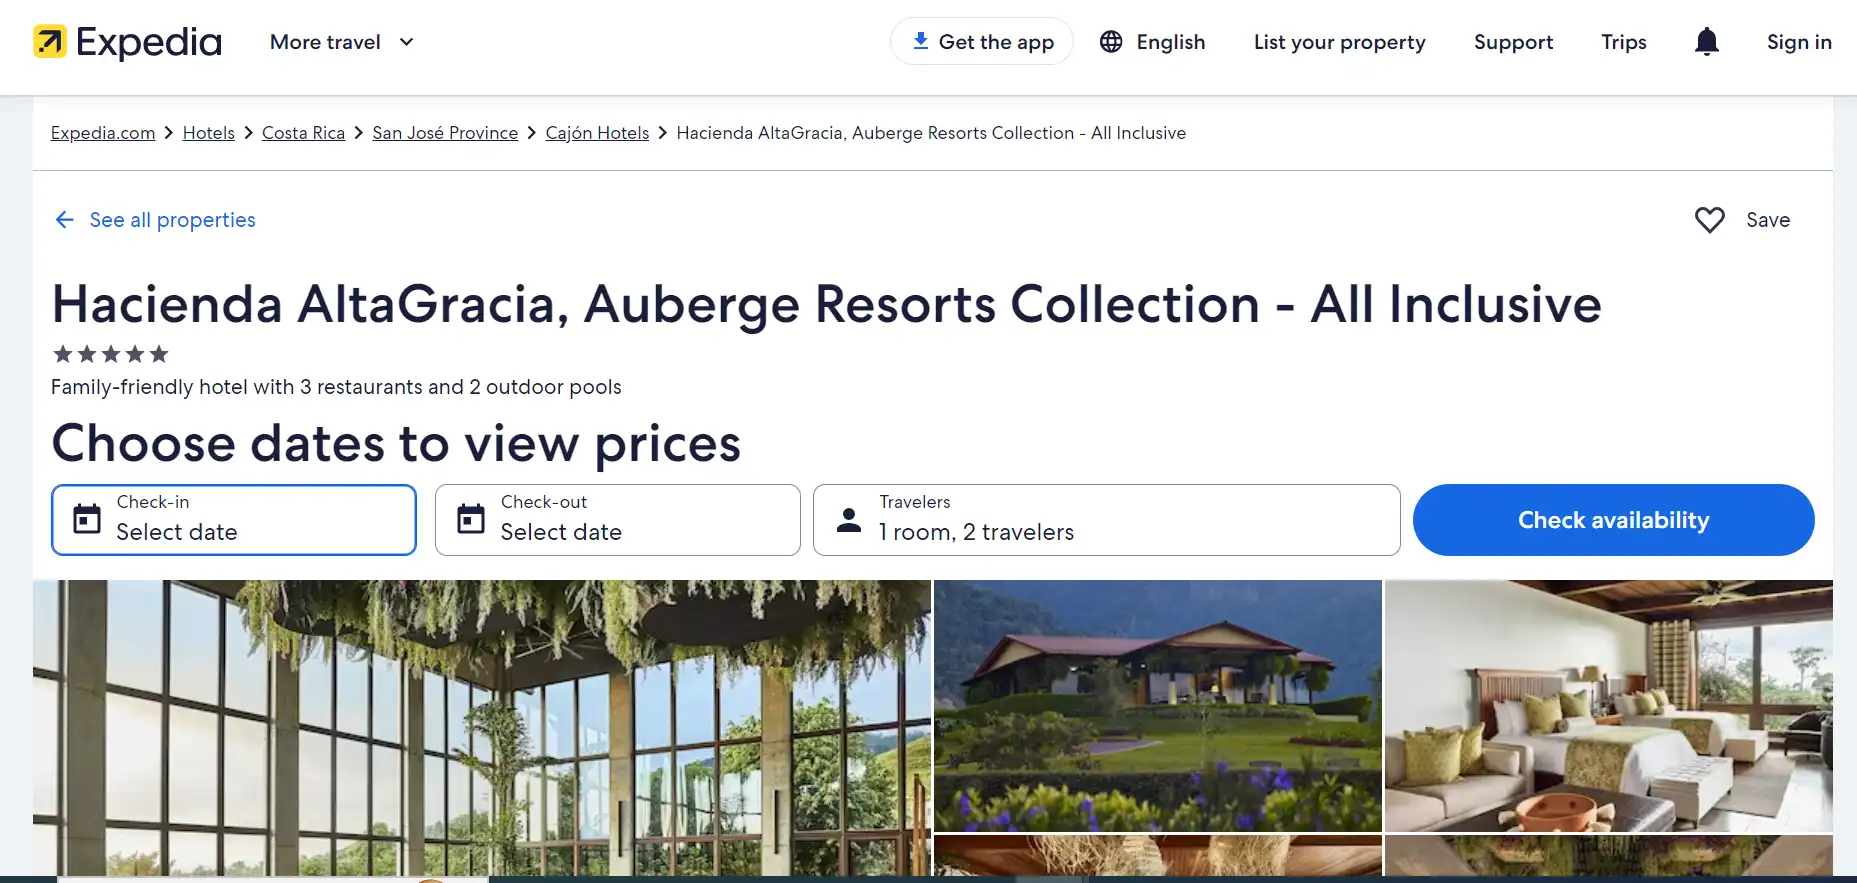 Hacienda AltaGracia, Auberge Resorts Collection - All Inclusive